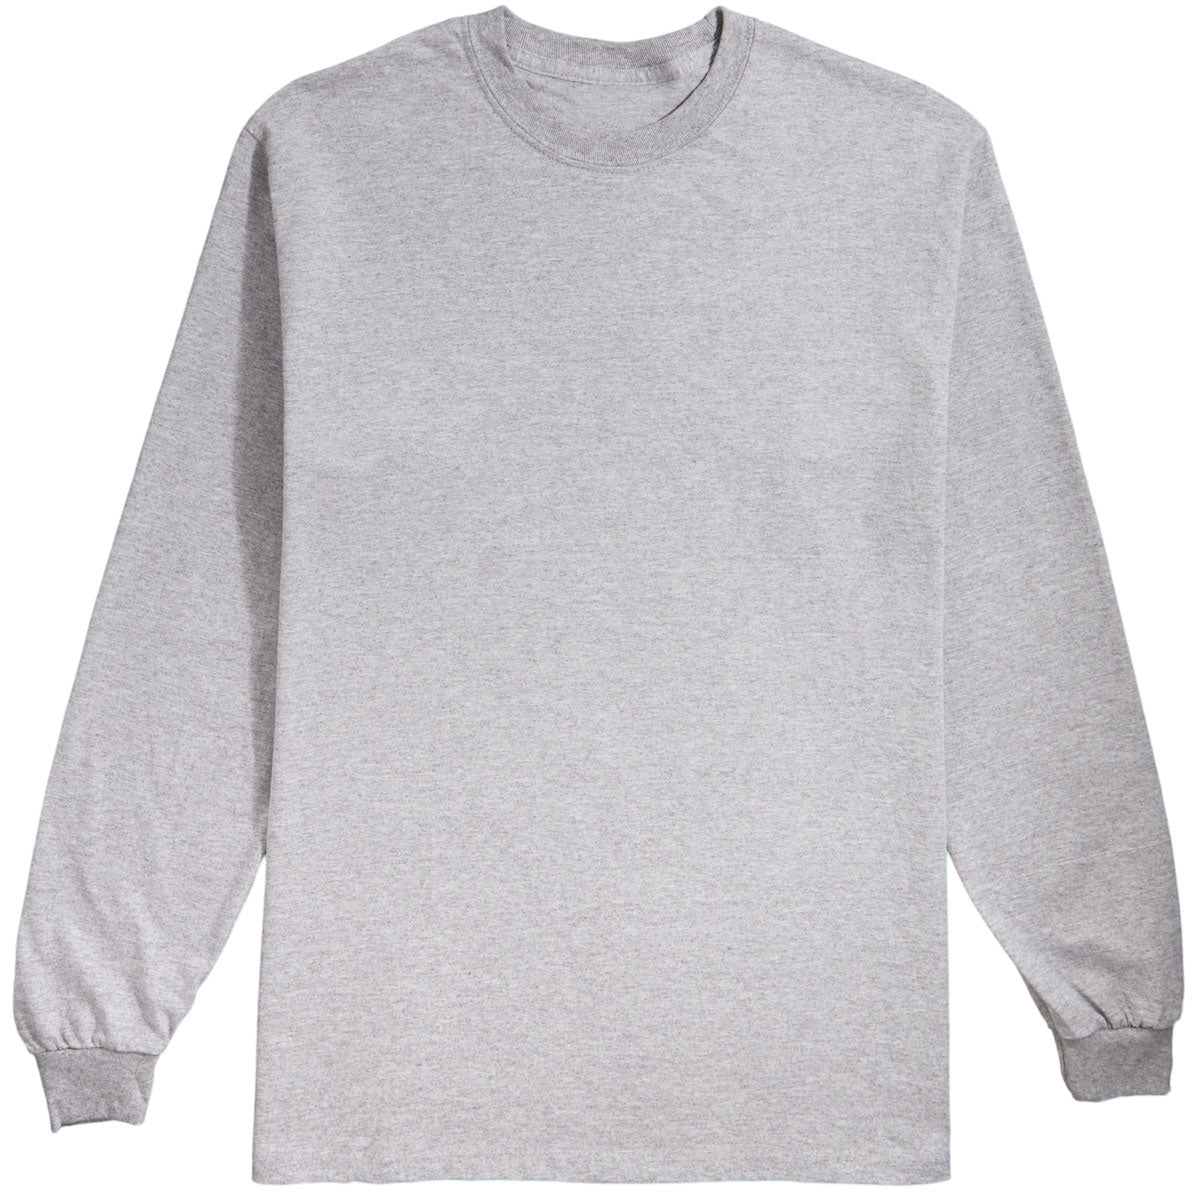 Jai Tanju Skate Chip Collage Long Sleeve T-Shirt image 2